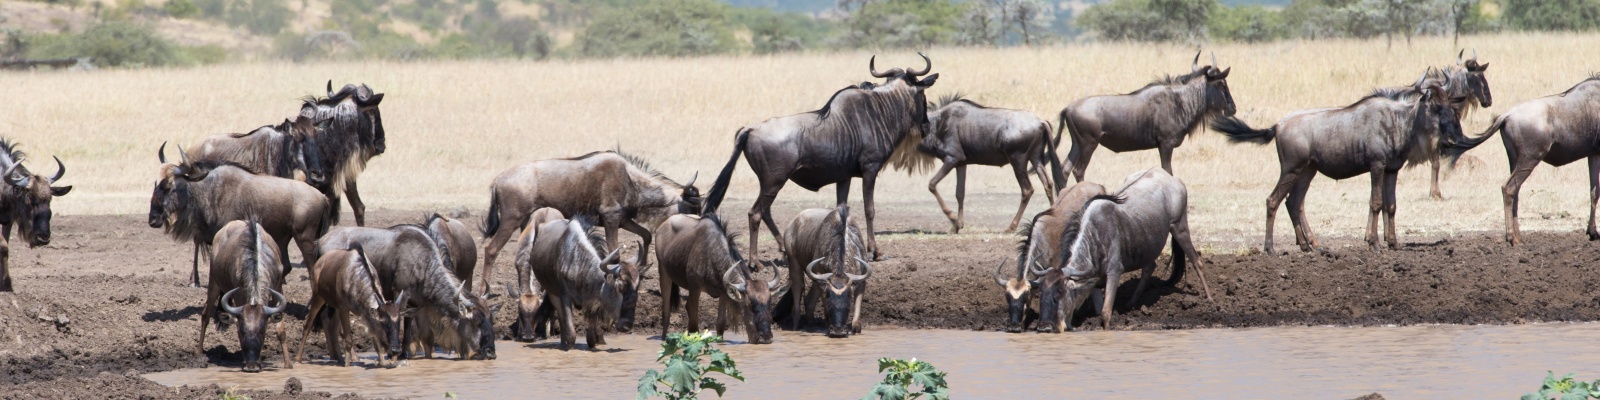 Животные сафари в Кении